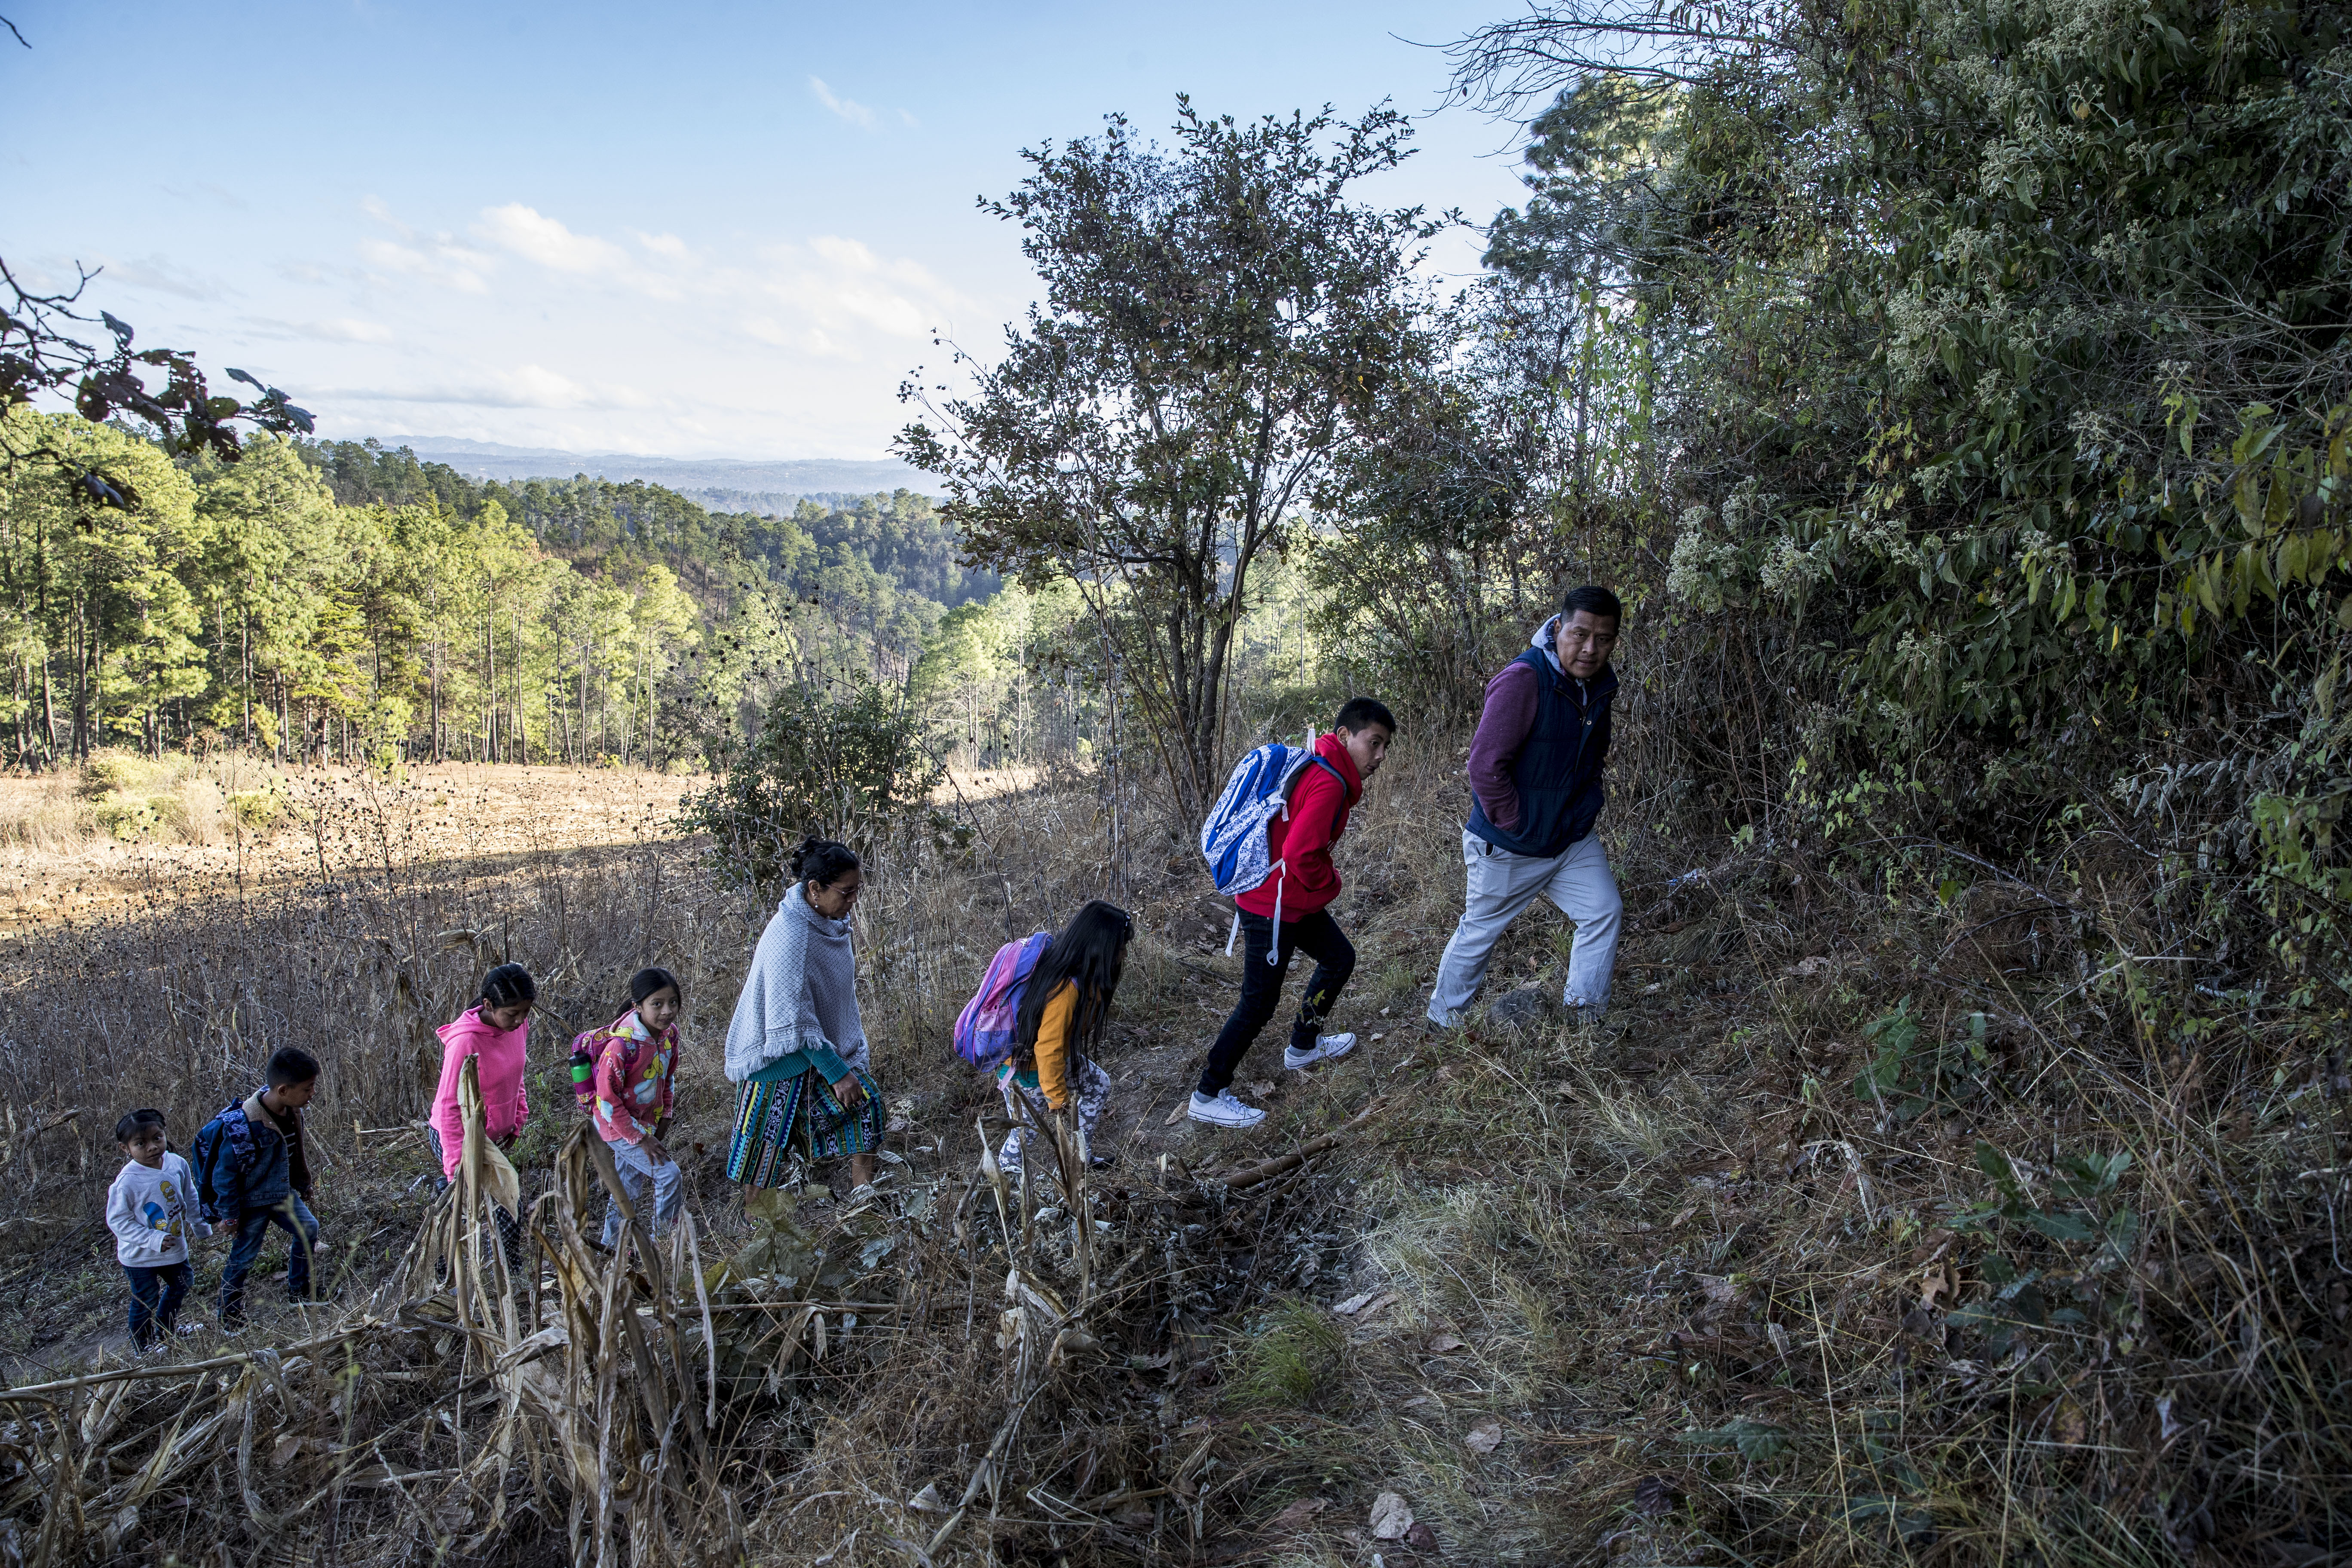 La directora de la escuela primaria rural Xatinap III, Petronila Mendoza (c-i), mientras acompaña a varios niños durante el recorrido para llegar a su primer día de clases presenciales  esa comunidad de Santa Cruz del Quiché Quiché. (Foto Prensa Libre: EFE)